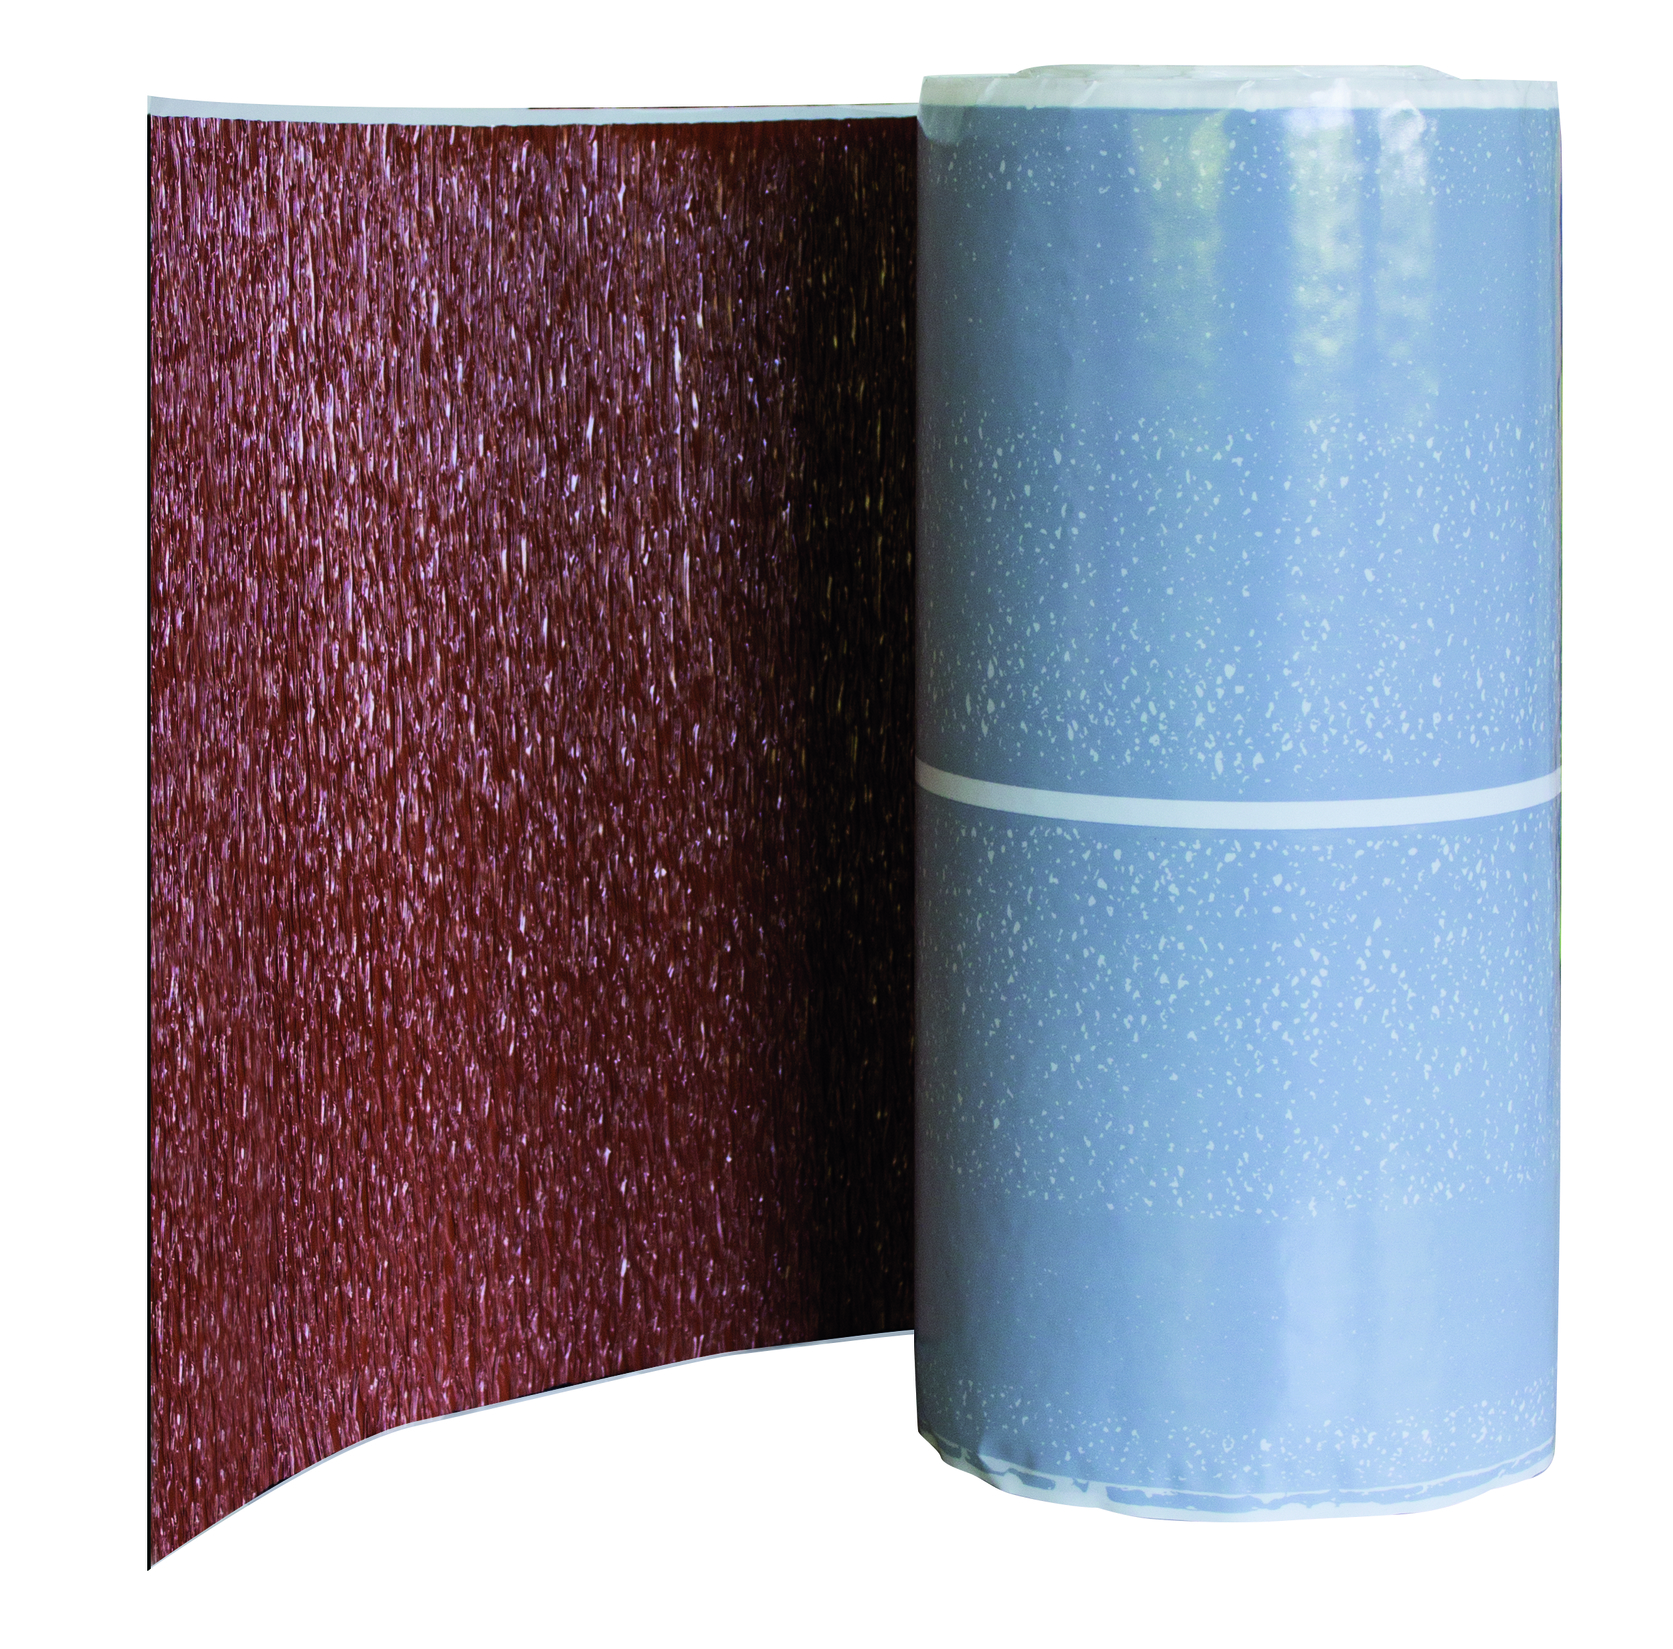 Alu traka za opšav dimnjaka i zida, 450 mm širina, 5 m dužina (crvena/siva/smeđa/crna)